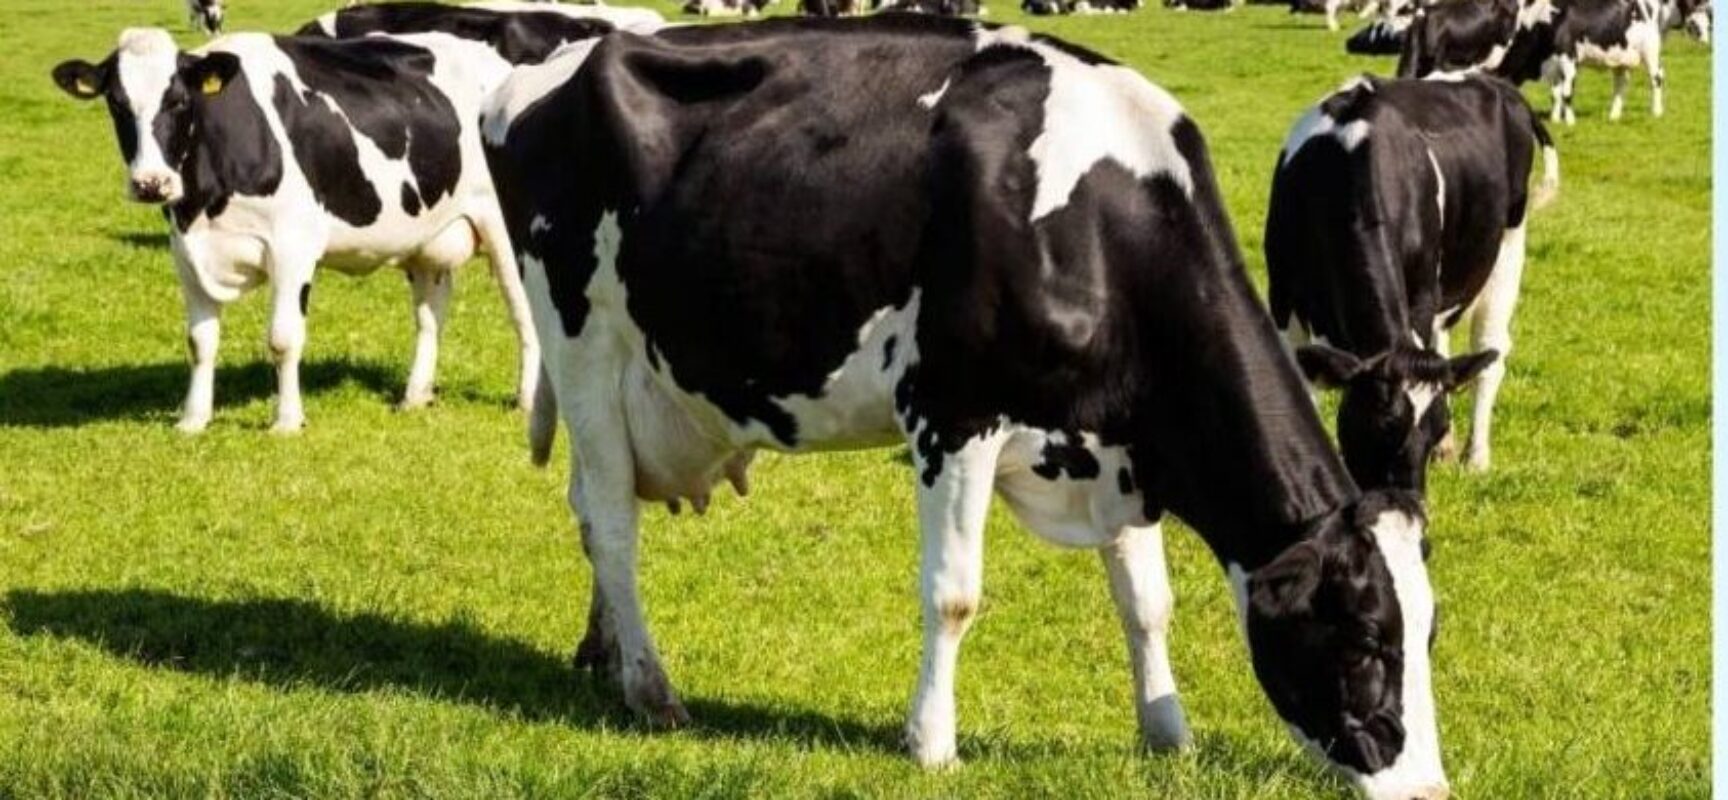 Ministério da Agricultura investiga possível caso de vaca louca no Brasil